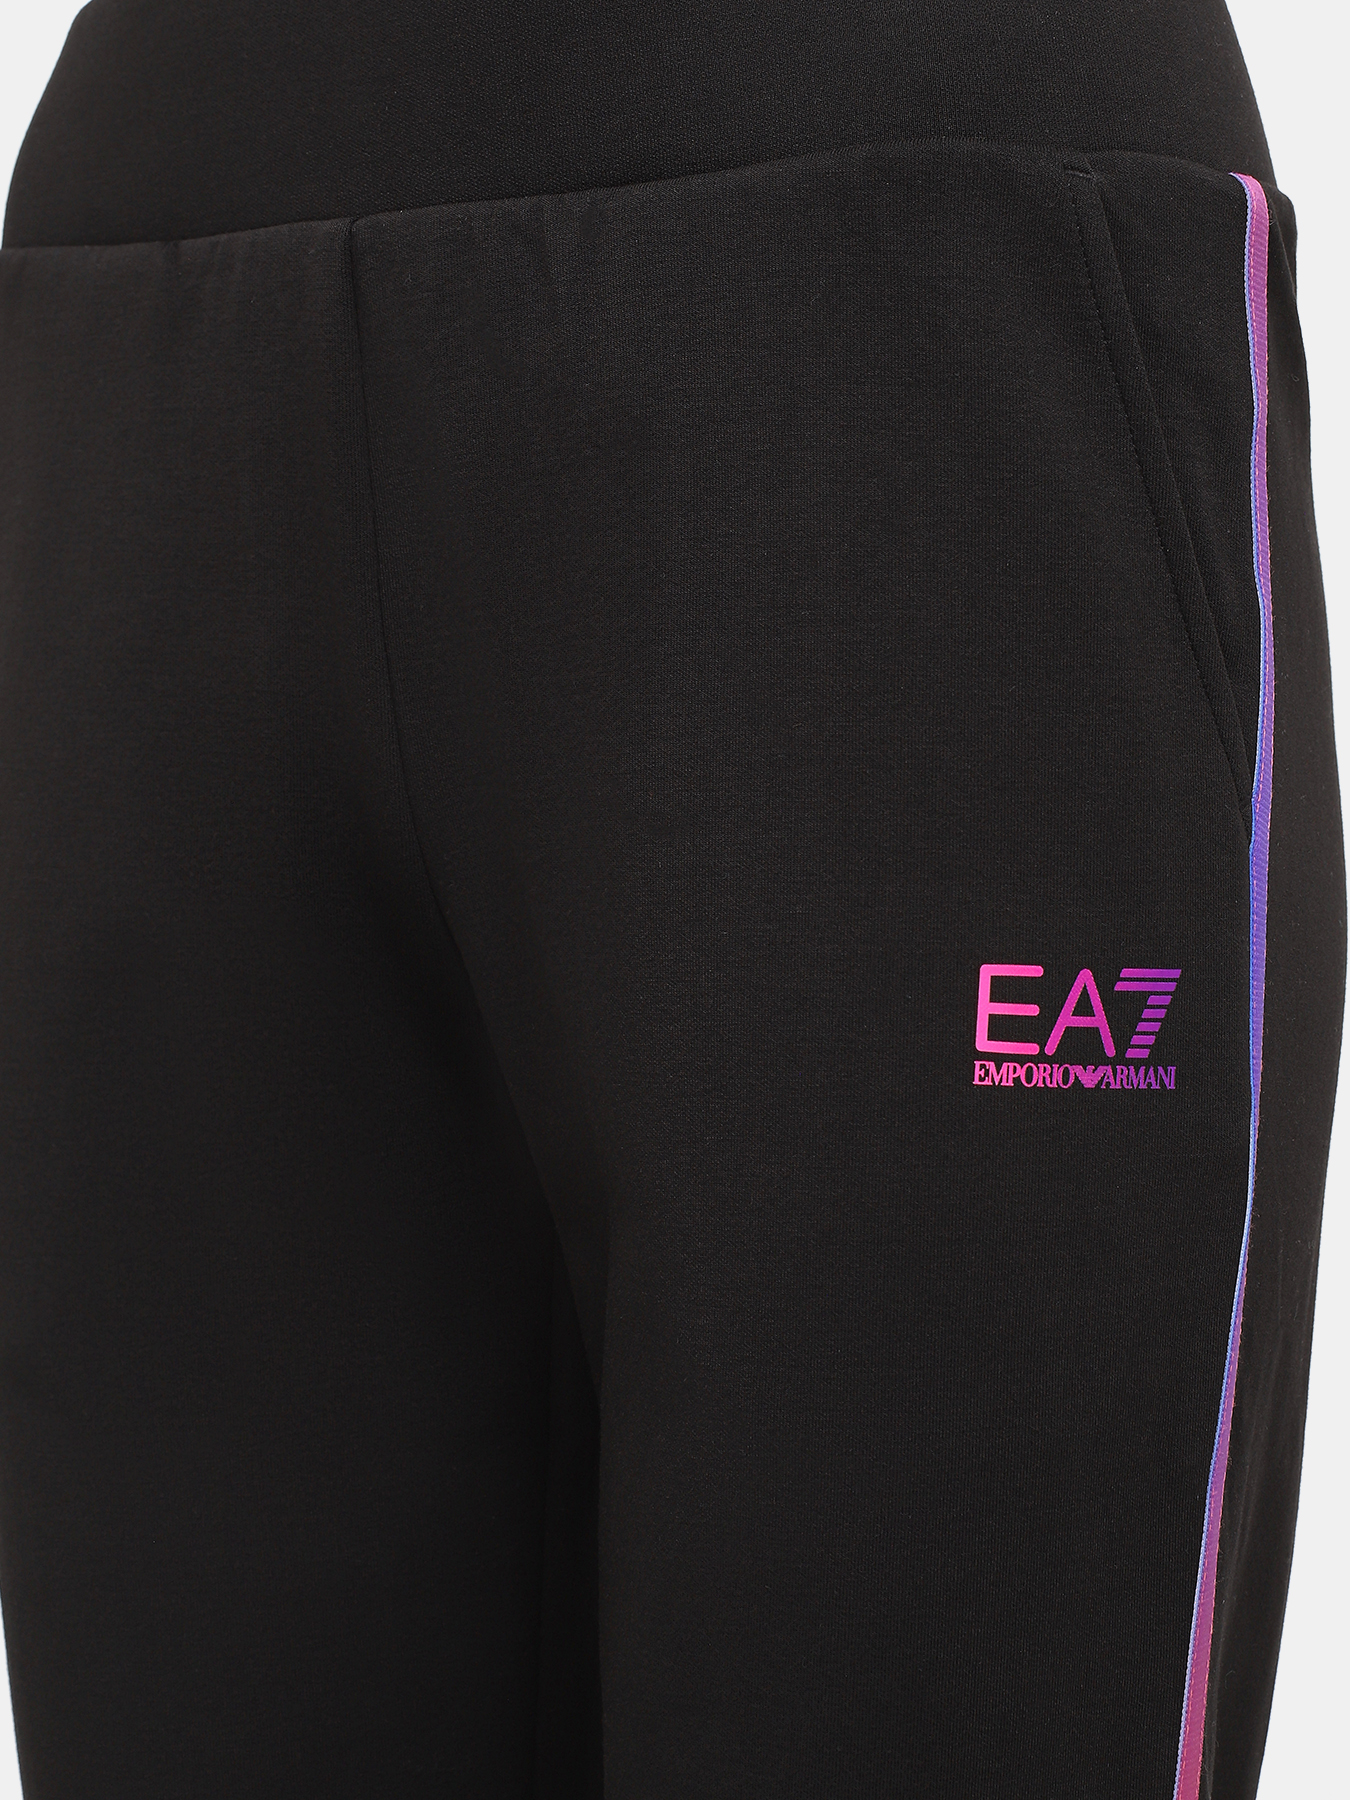 Спортивные брюки EA7 Emporio Armani 423025-043, цвет черный, размер 44-46 - фото 5